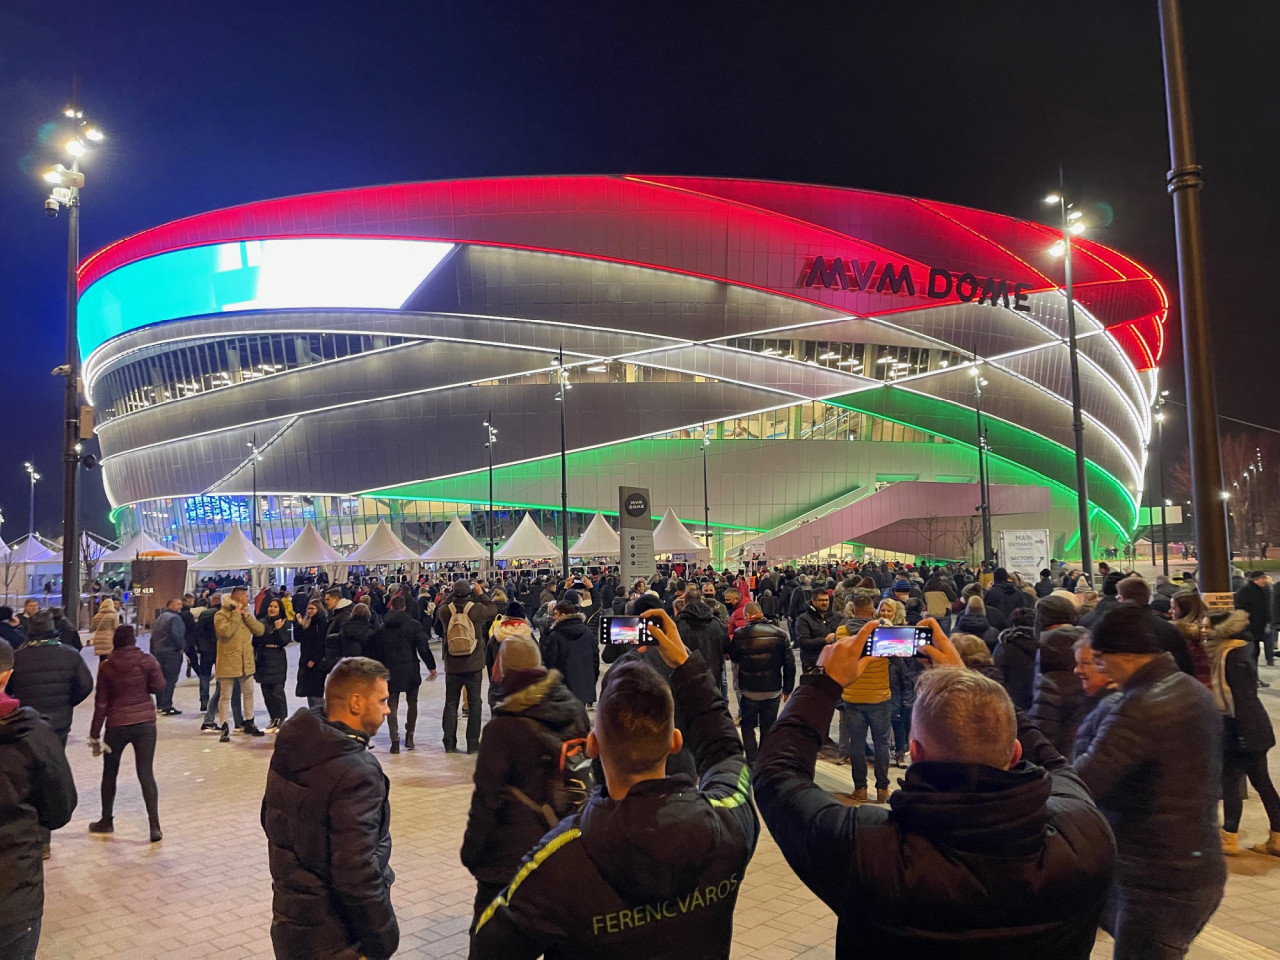 A magyar-szlovák közös rendezésű férfi kézilabda Európa-bajnokság egyik helyszíne, a budapesti MVM Dome előtt 2022. január 13-án. (Fotó: Lukács Csaba/Magyar Hang)